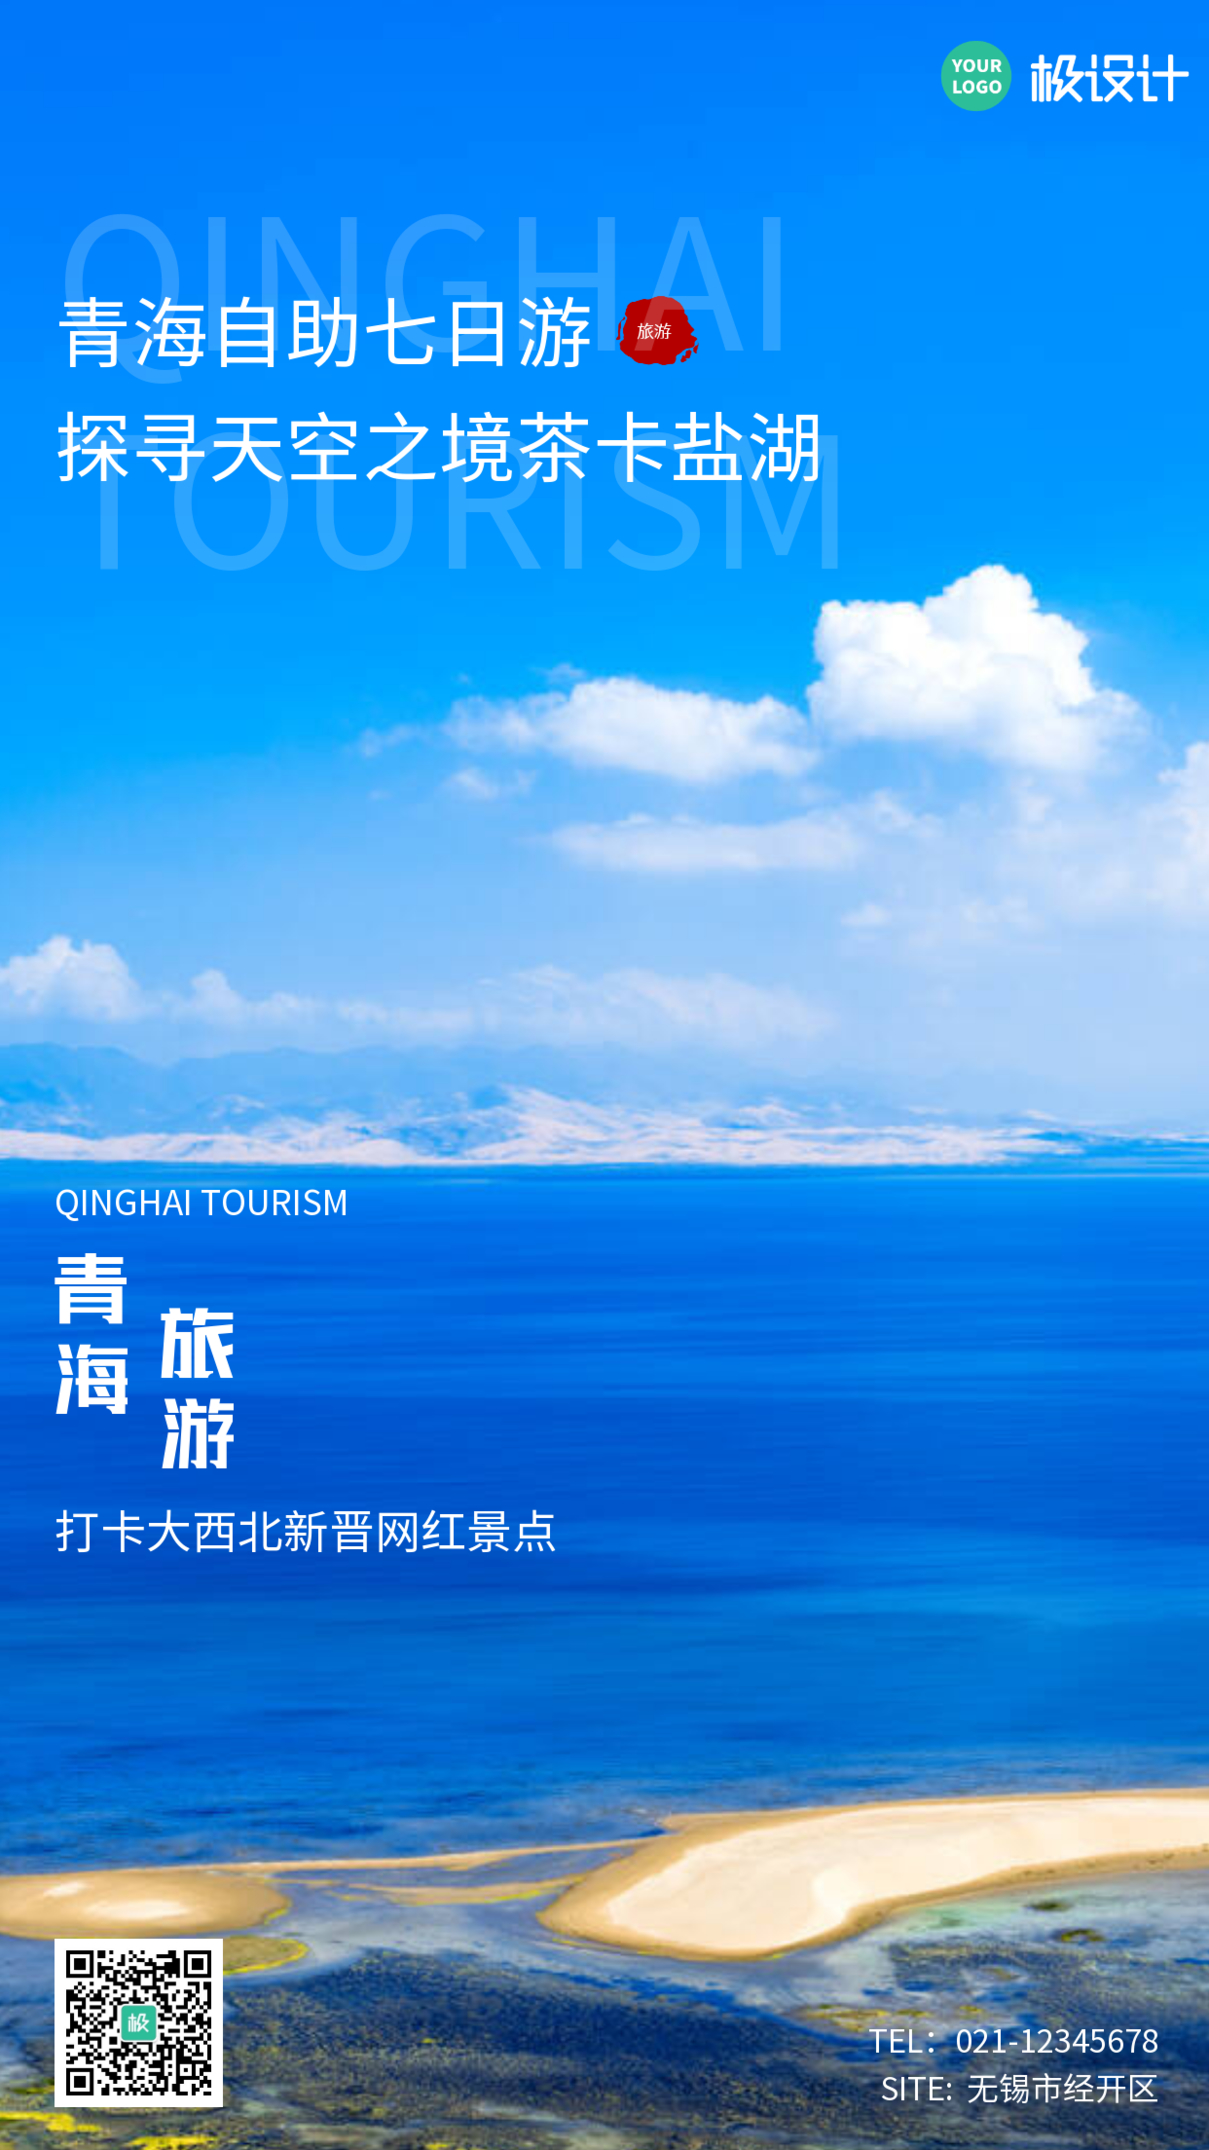 创意摄影风清新青海旅游宣传手机营销海报